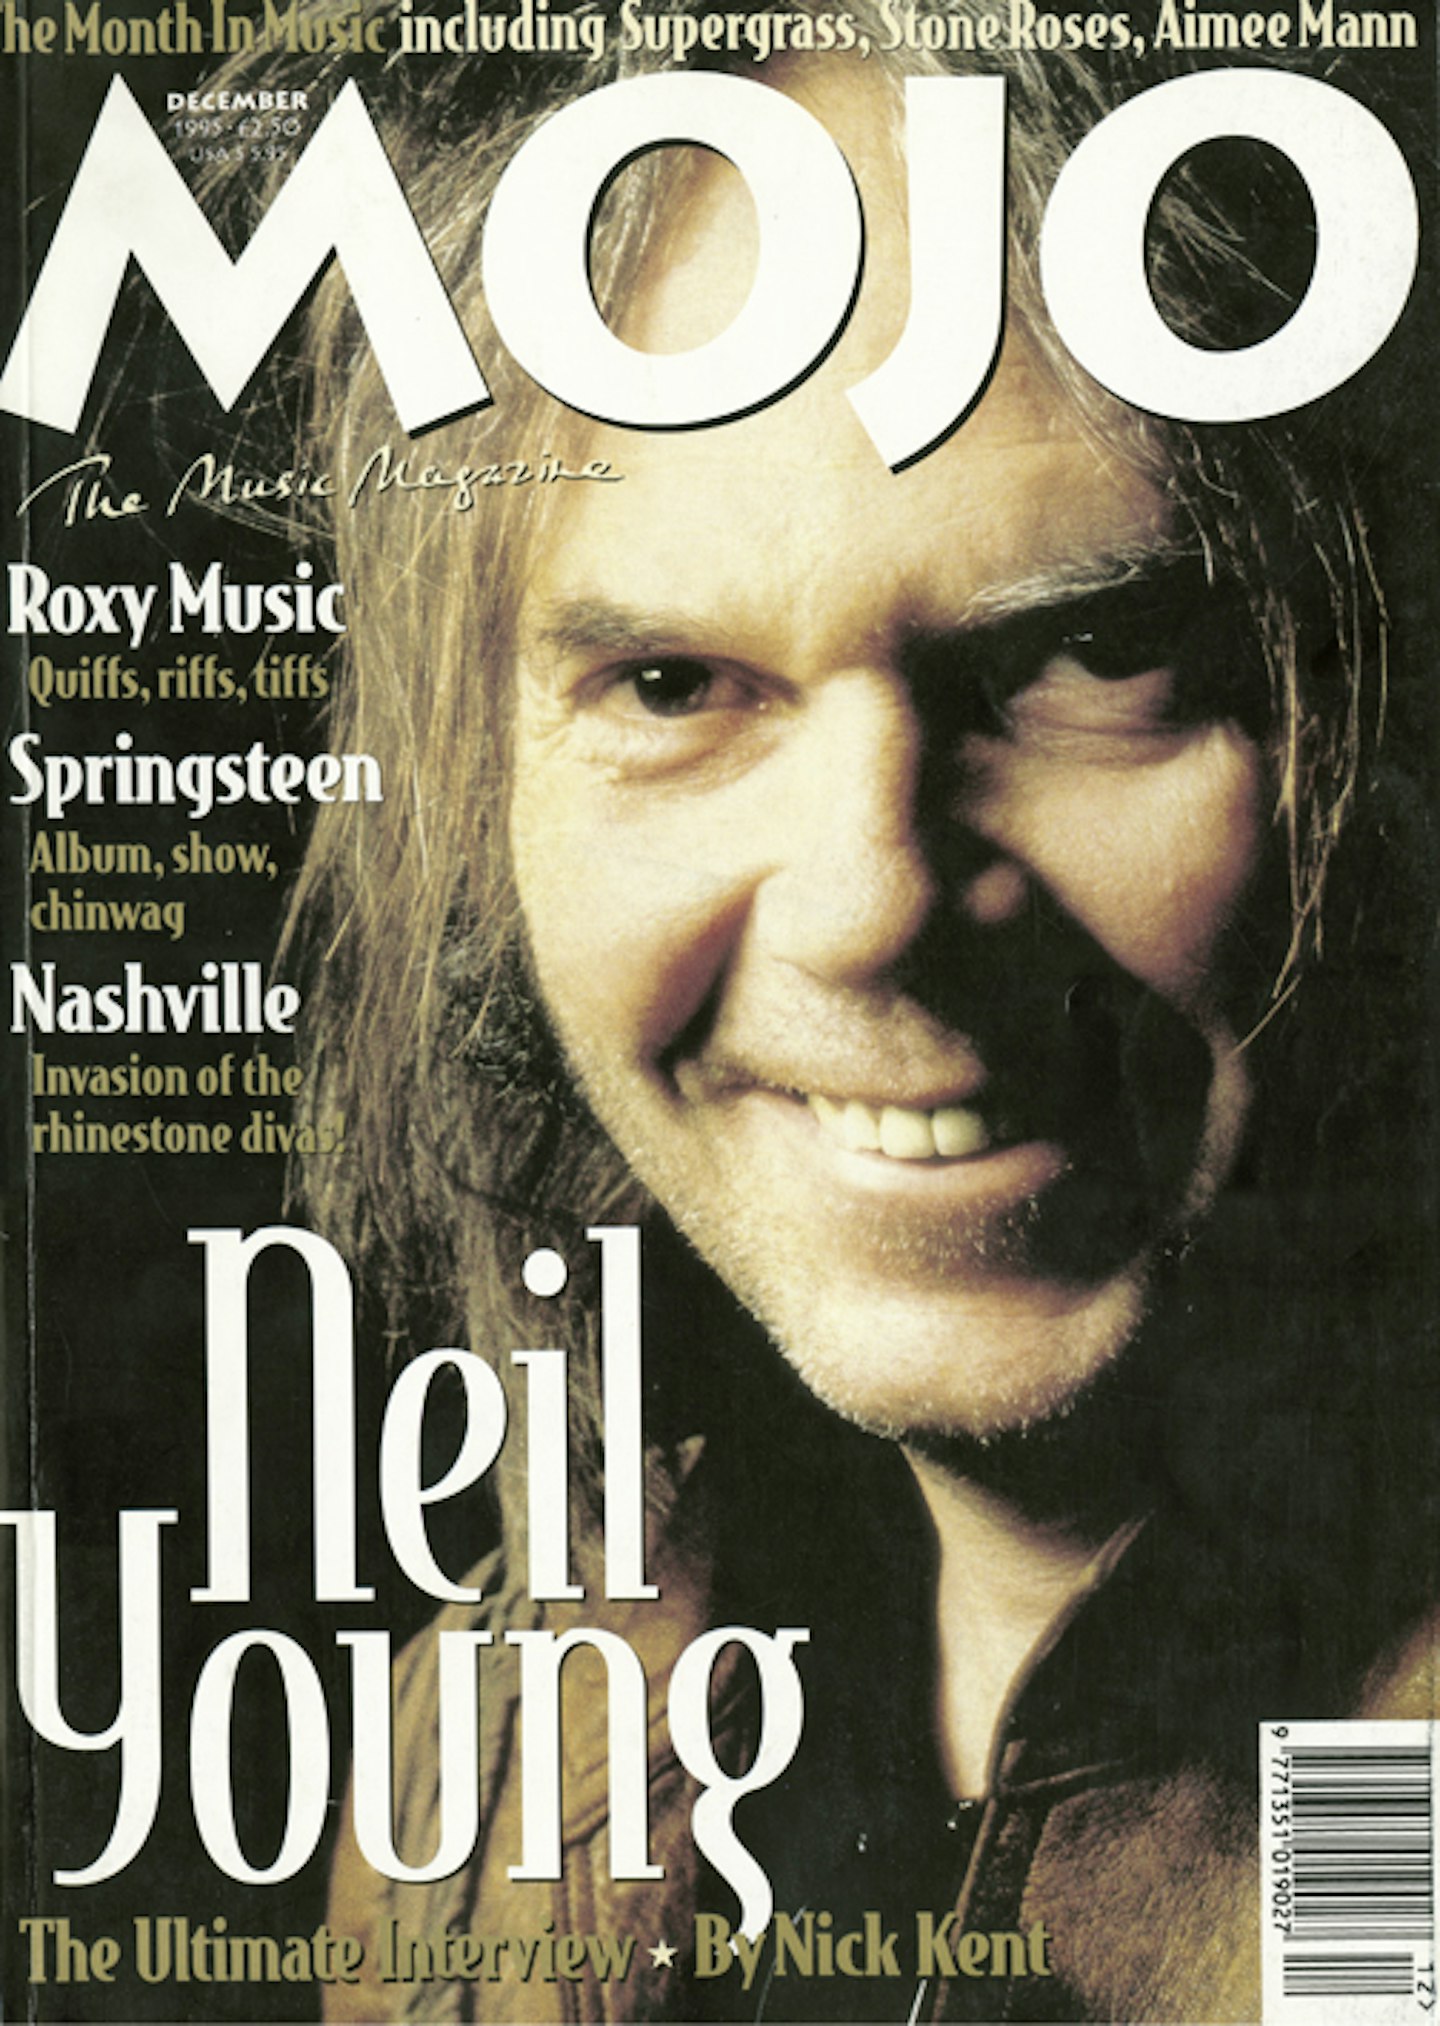 MOJO Issue 25 / December 1995